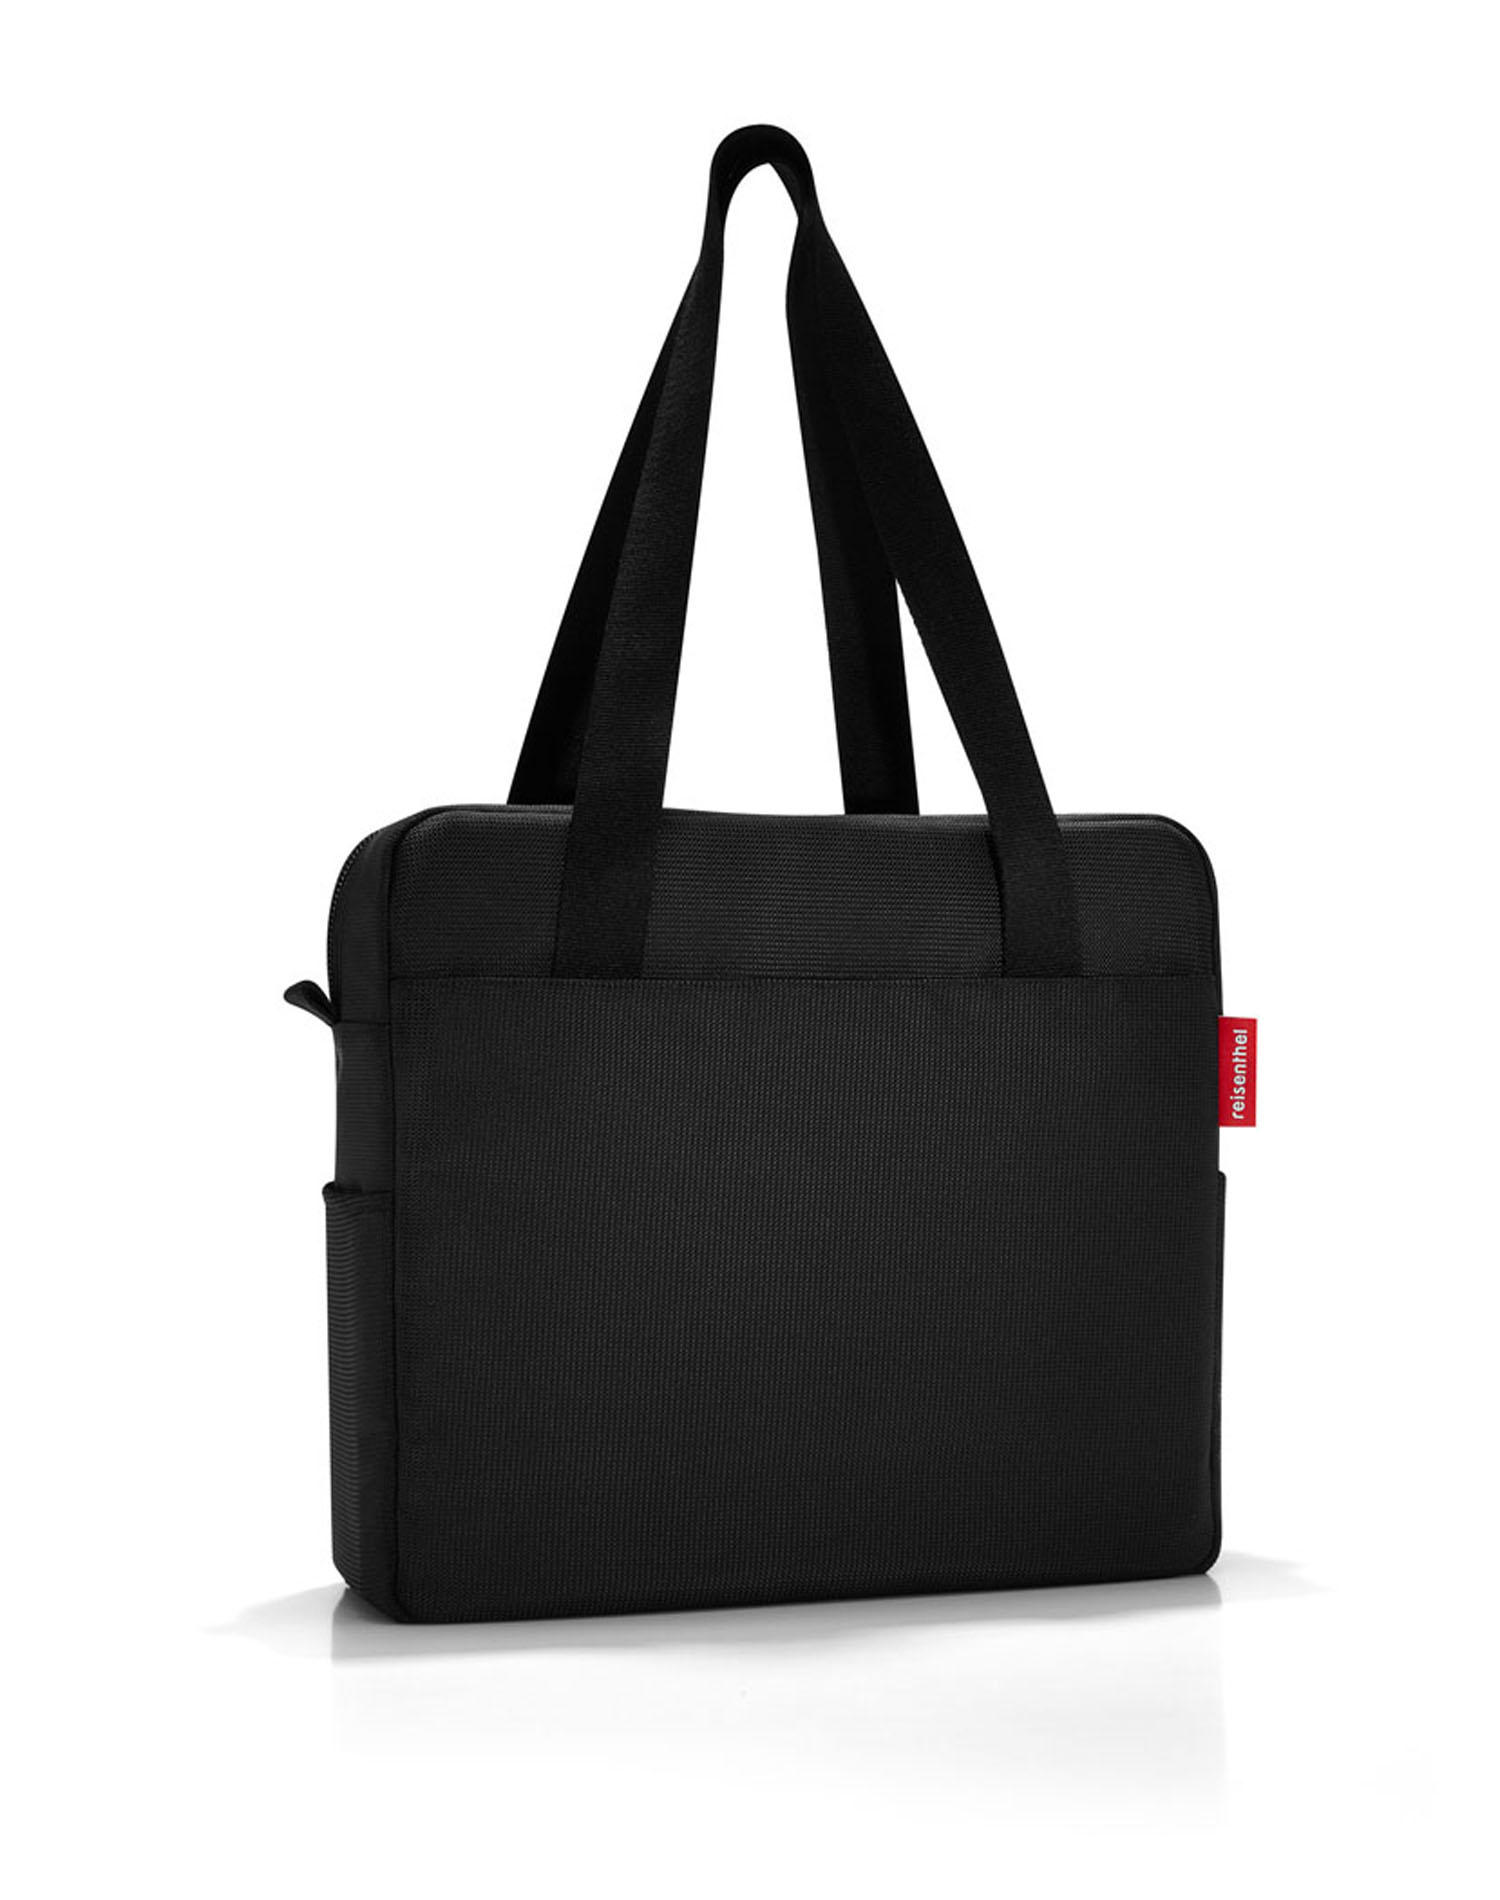 Reisenthel business businessbag Black | jetzt online kaufen auf Koffer.de ✓